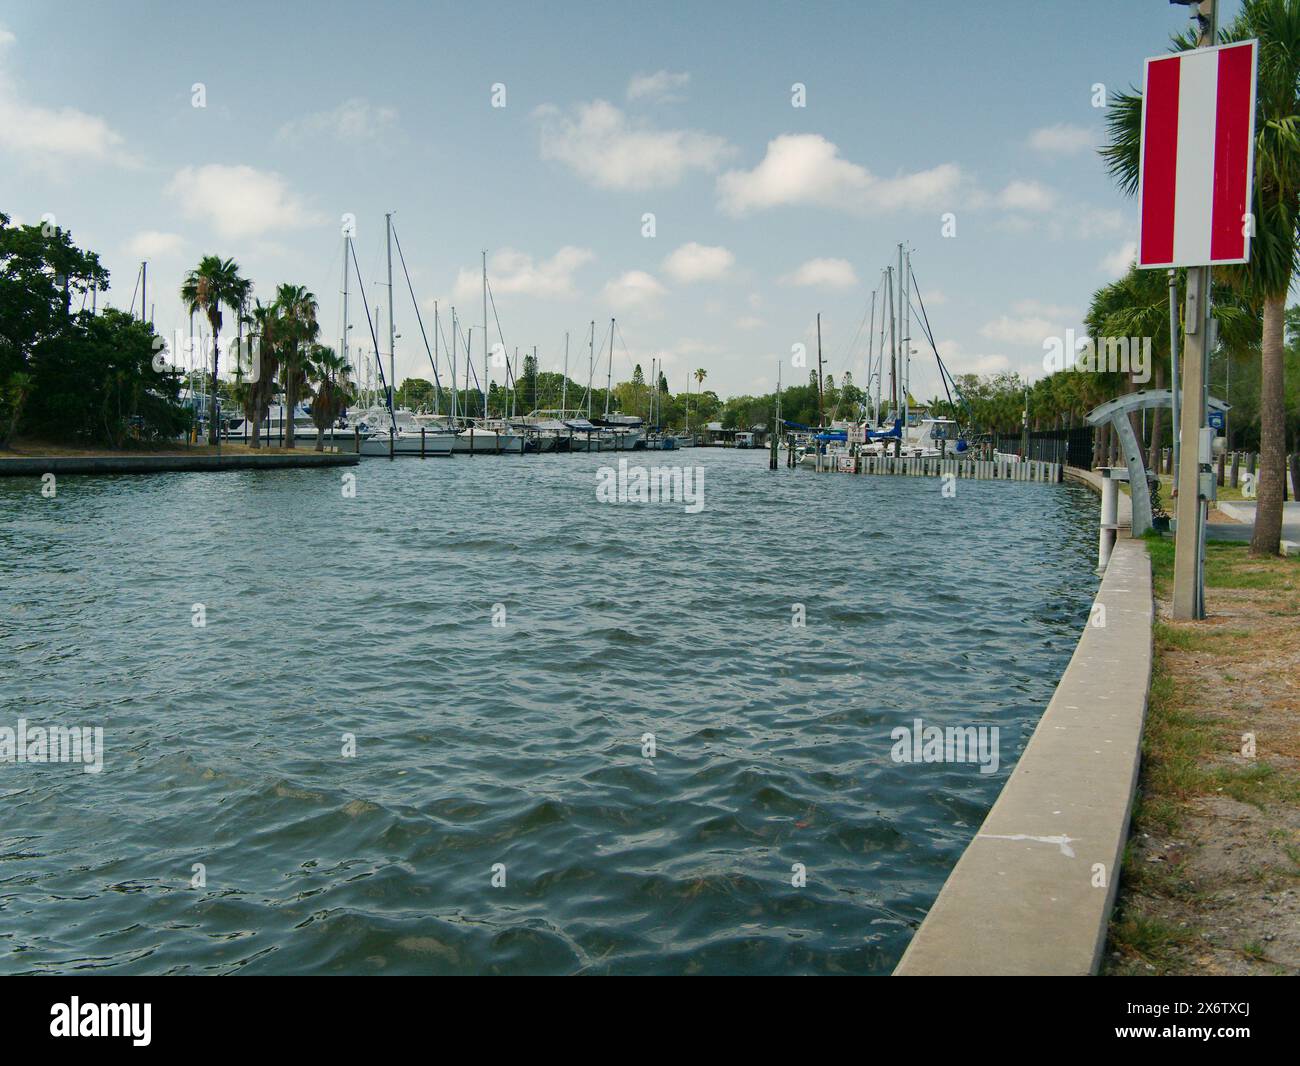 Weiter Blick nach Norden in die City of Gulfport Municipal Marina. Ruhiges blaues Wasser mit einem kleinen Boot. Wellige Wellen. Bootsanlegestelle, Holzpfähle und Boote Stockfoto